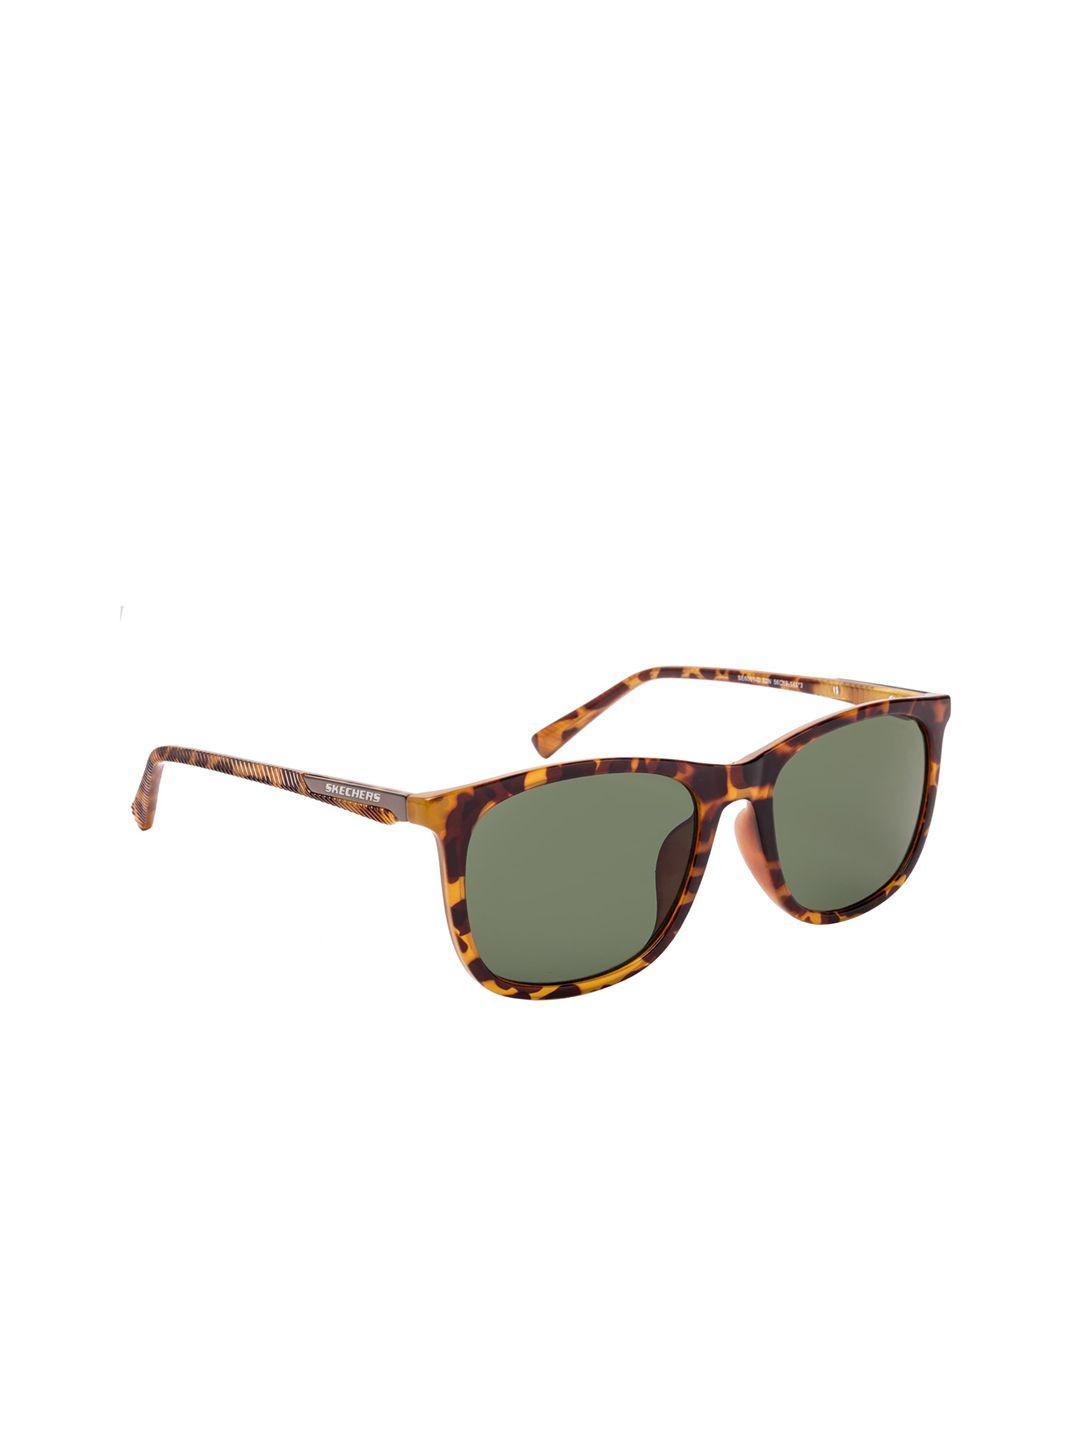 skechers men green rectangle uv protected sunglasses se6061-d 56 52n